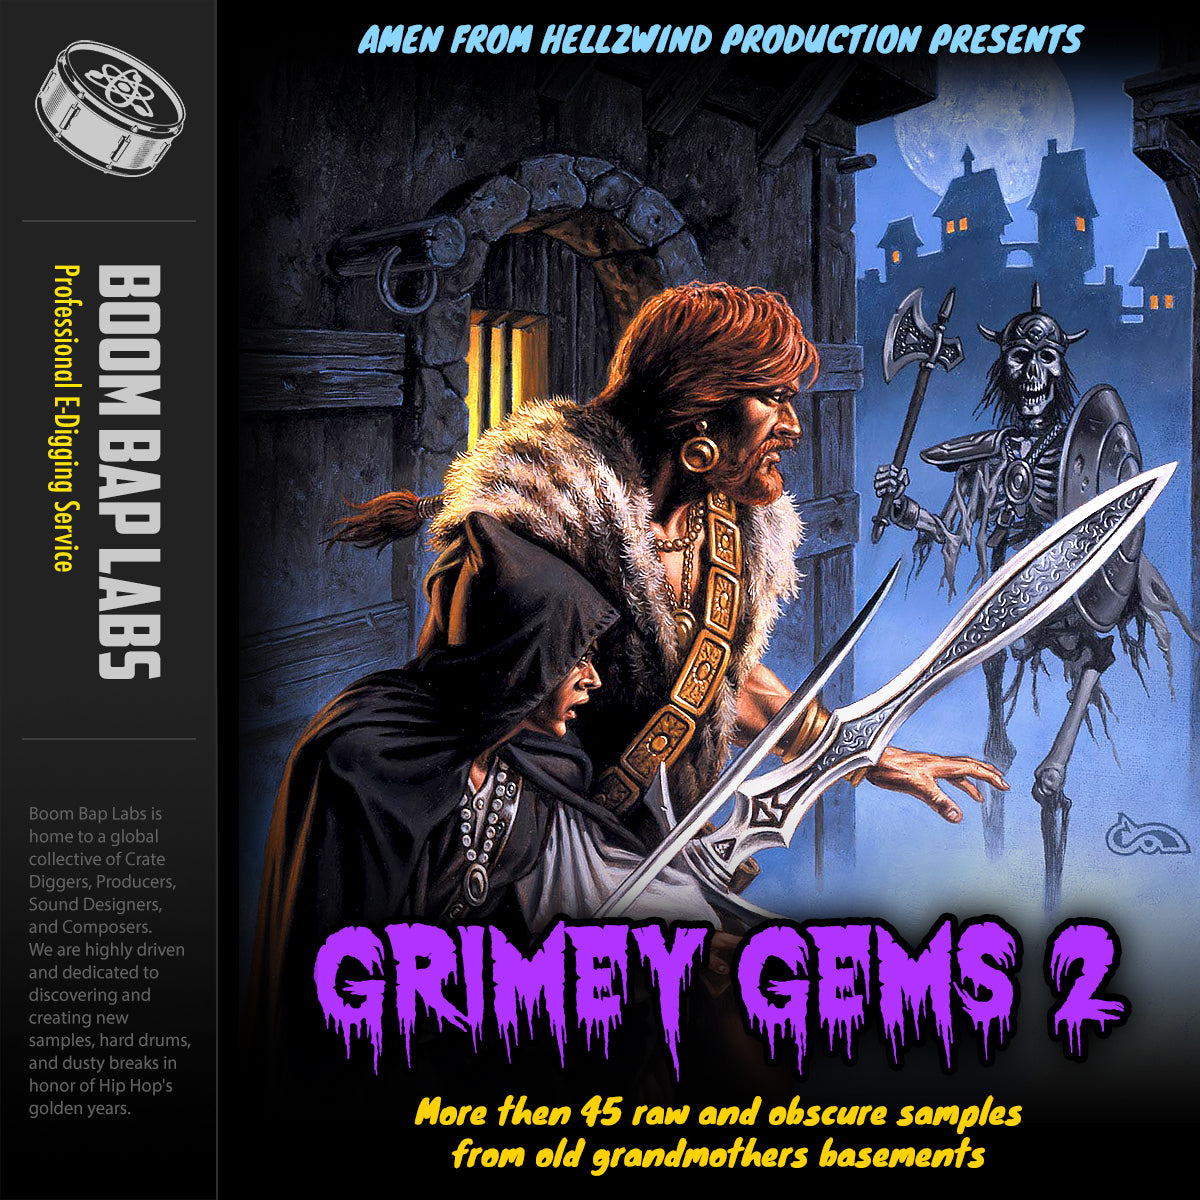 Grimey Gems First Series Volume 2